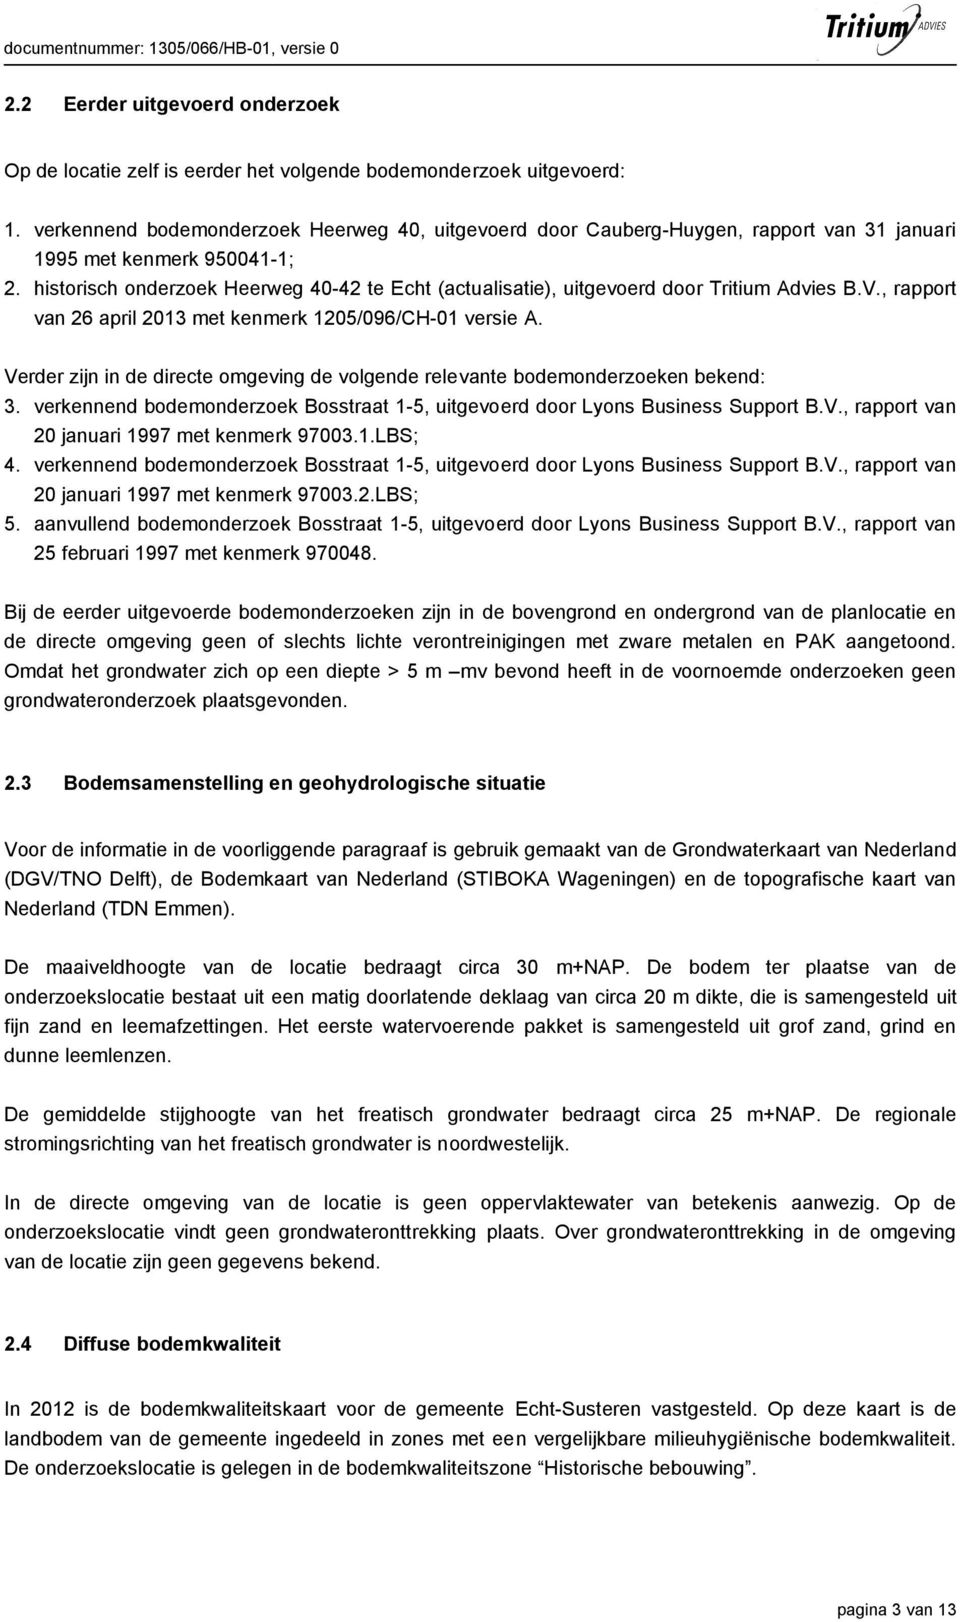 historisch onderzoek Heerweg 40-42 te Echt (actualisatie), uitgevoerd door Tritium Advies B.V., rapport van 26 april 2013 met kenmerk 1205/096/CH-01 versie A.